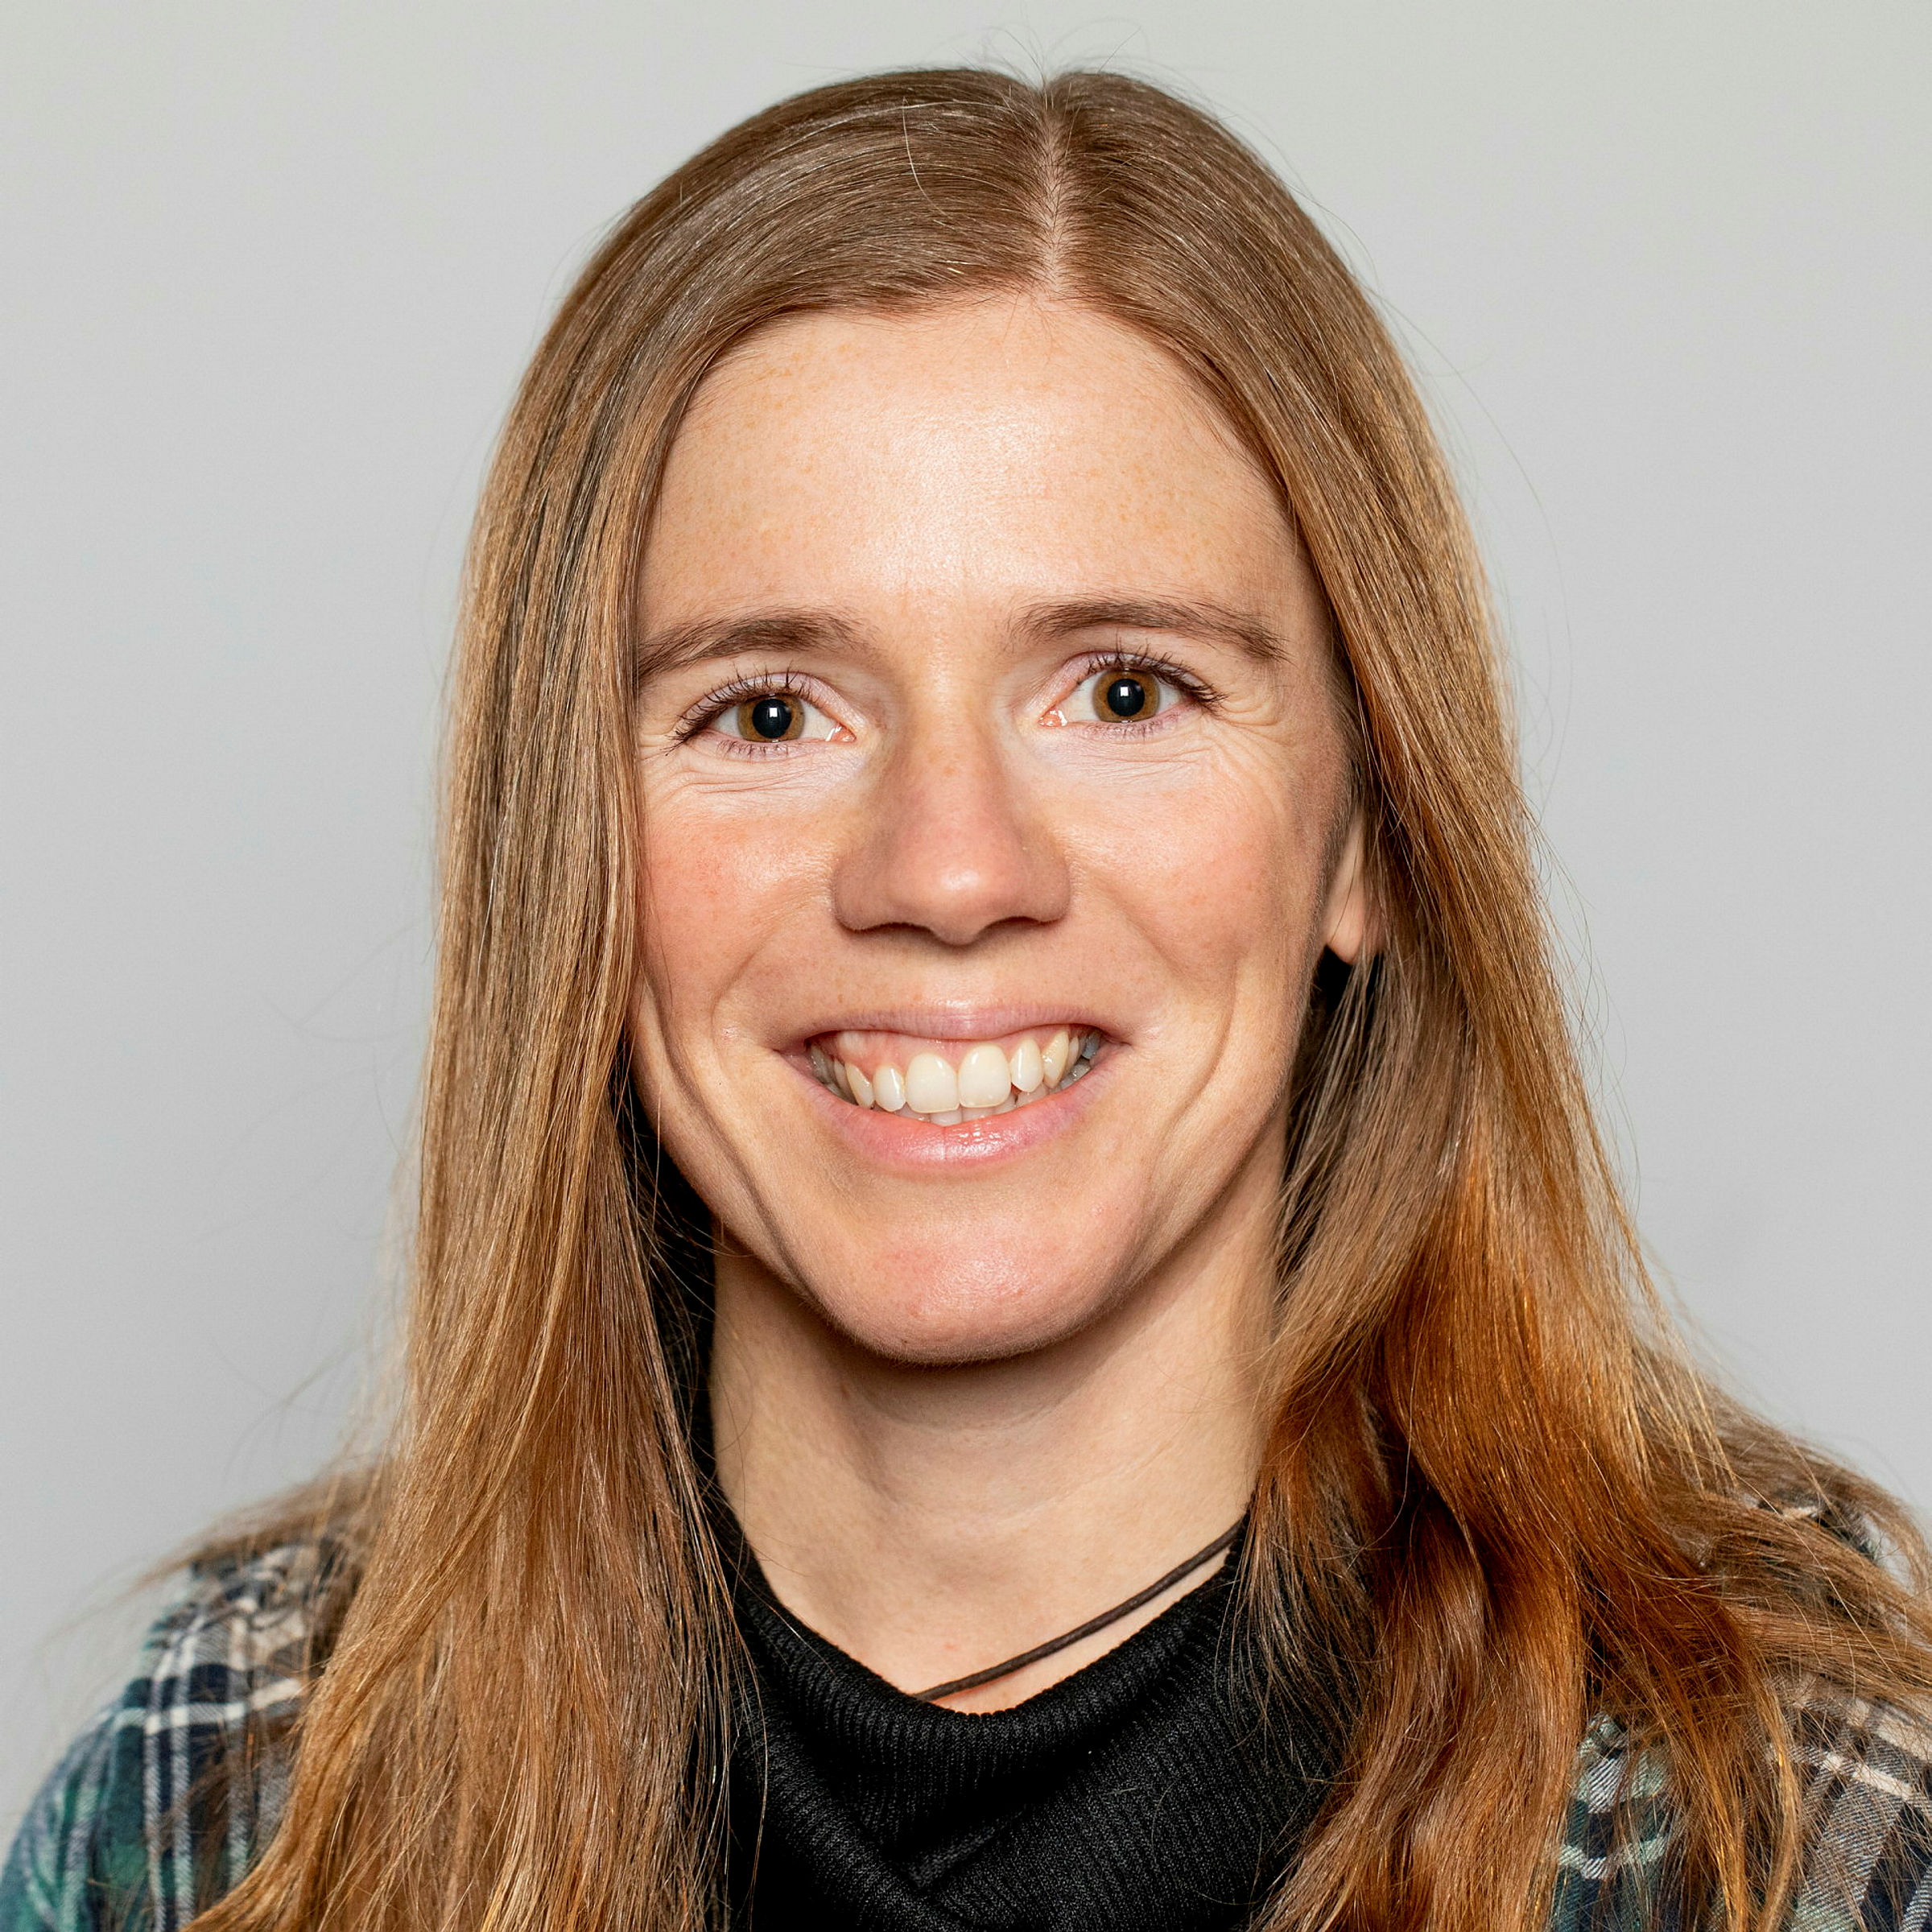 Bildet viser Elisabeth Veivåg Helseth 
PHD kandidat 
Fakultet for landskap og samfunn
Institutt for internasjonale miljø- og utviklingsstudier, Noragric, NMBU